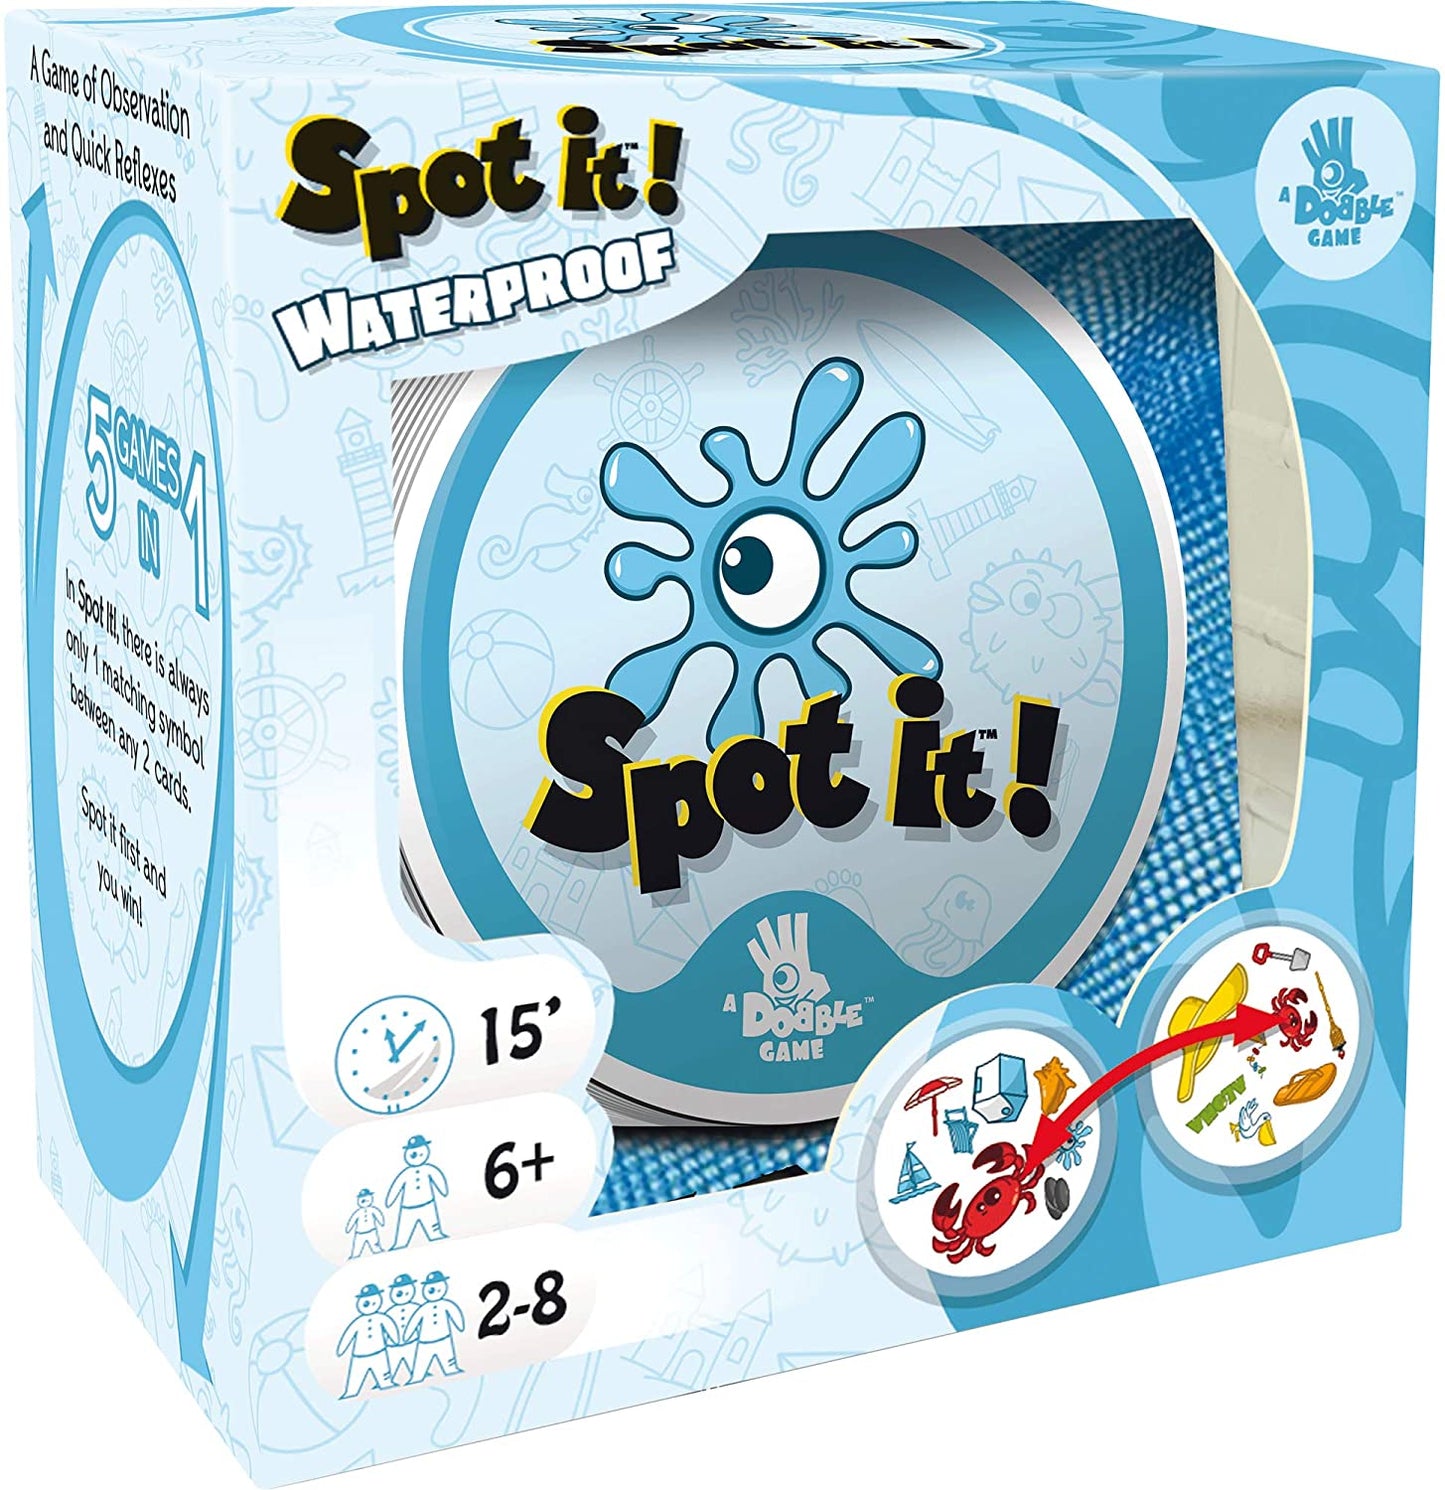 Spot It Waterproof (Eco-Blister)